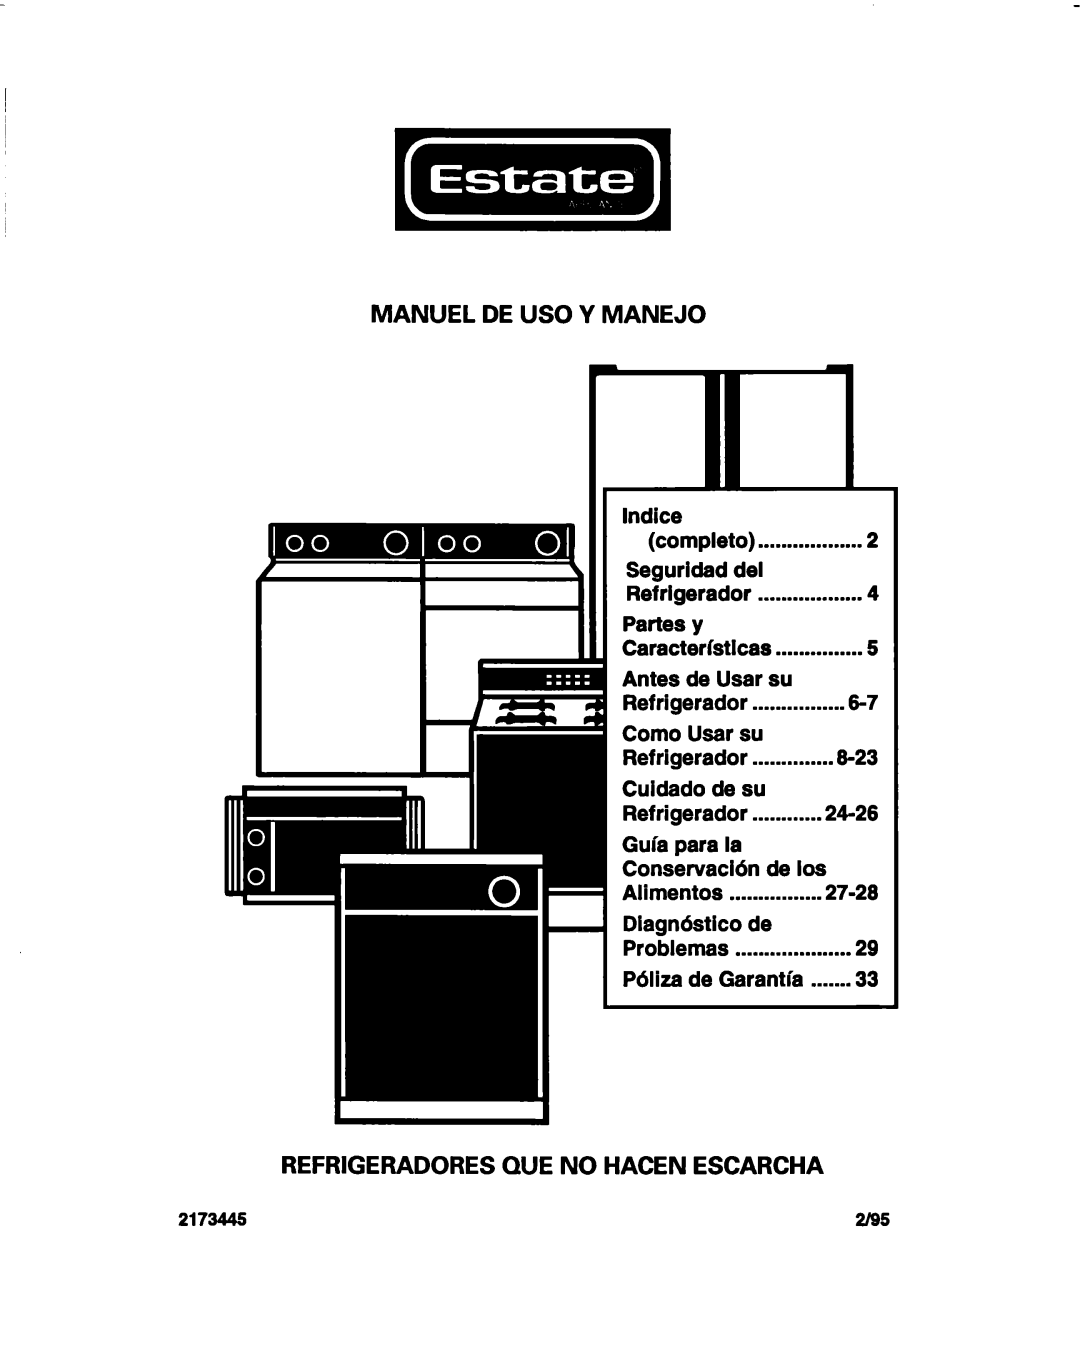 Estate 2173445 warranty MANUEL DE US0 Y MANEJO, Refrigeradores We No Hacen Escarcha 